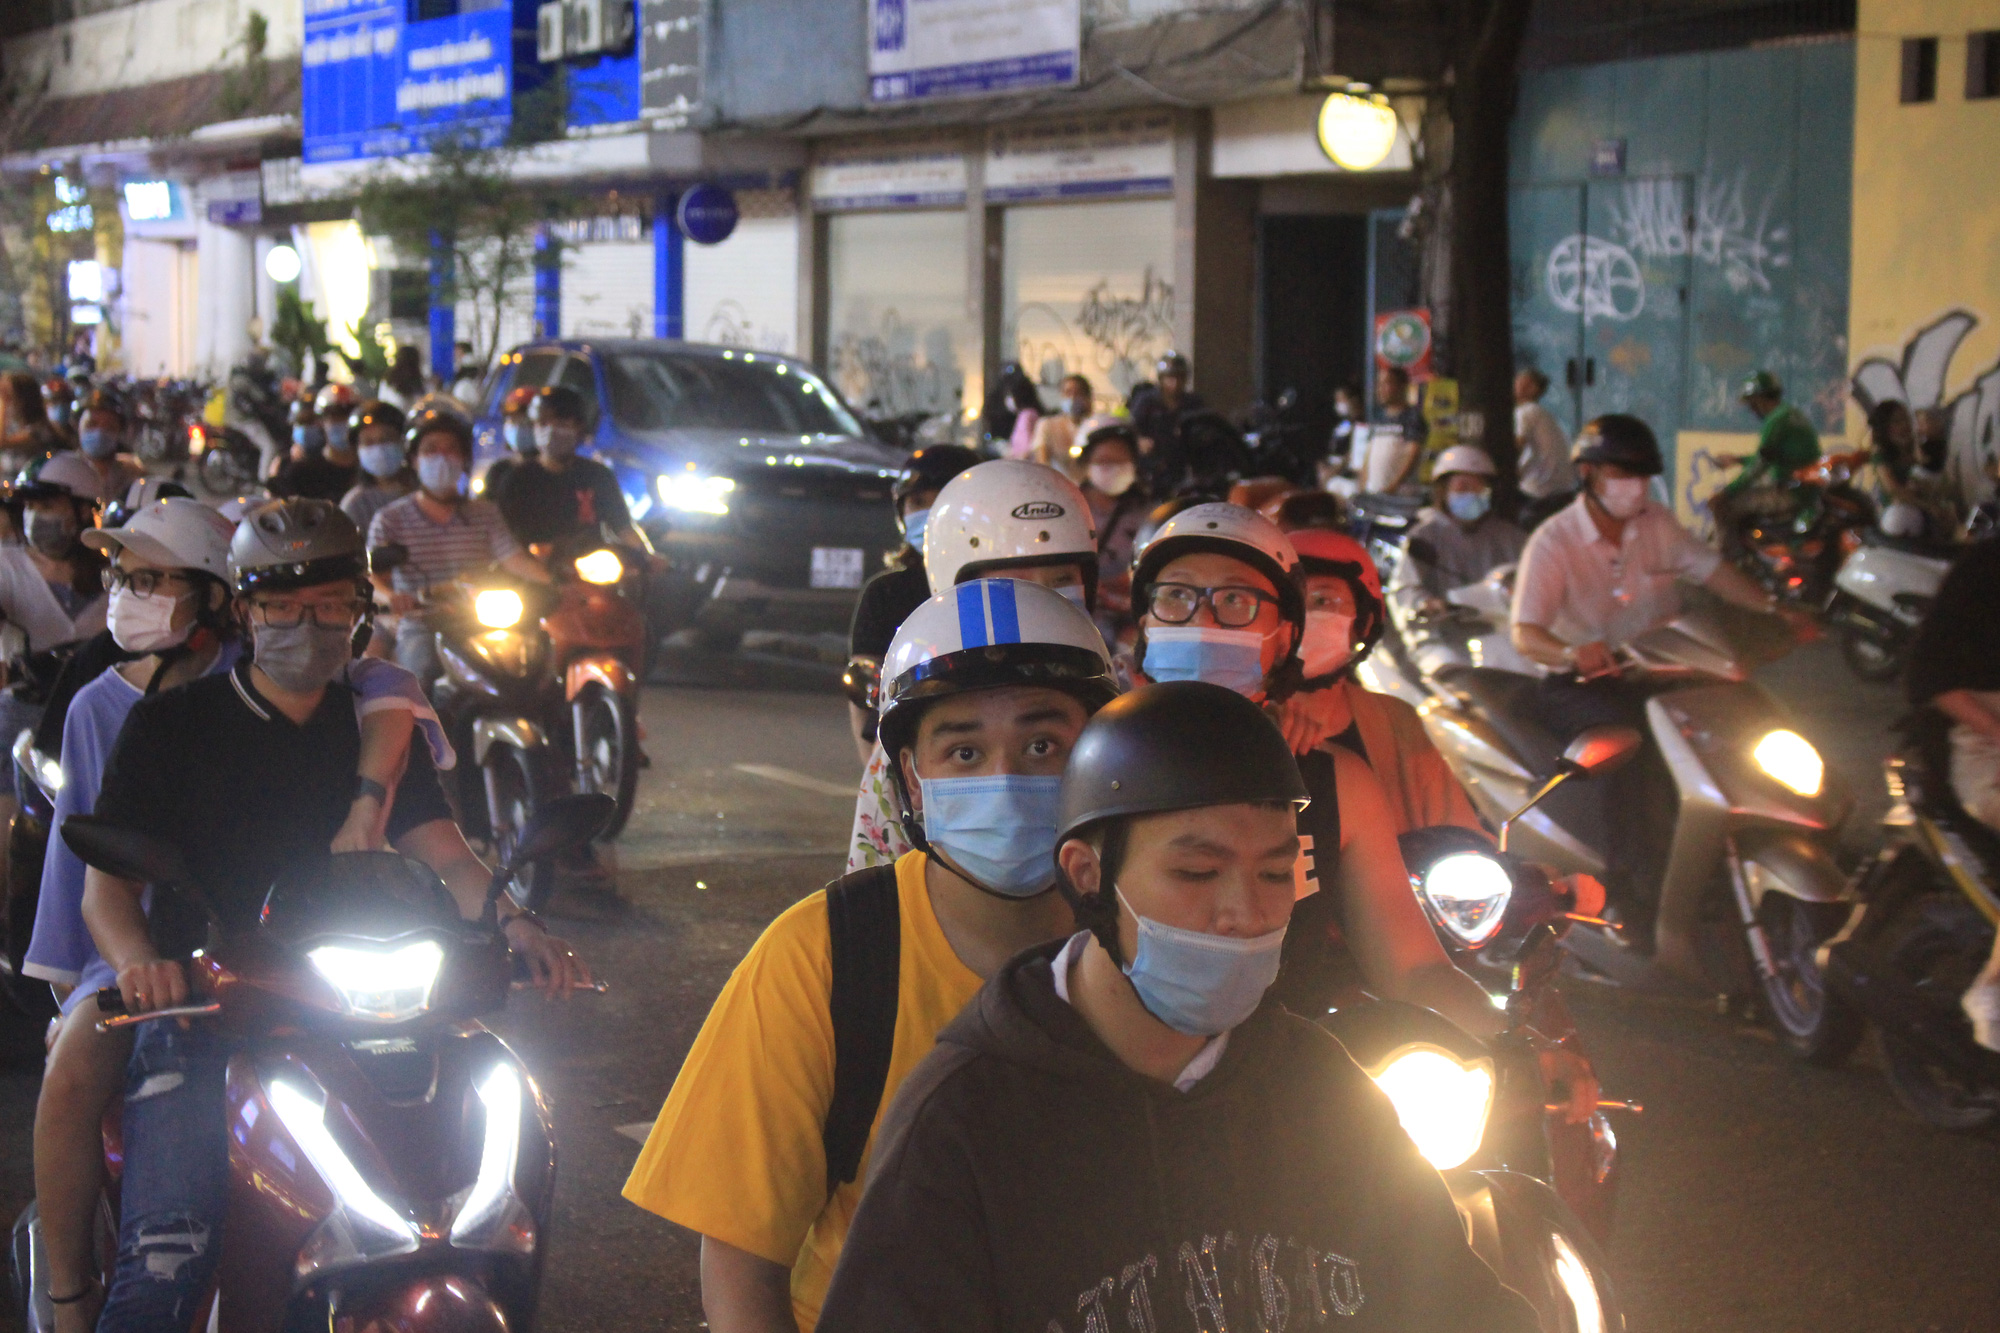 Đường Sài Gòn tắc nghẽn, bãi xe trung tâm thương mại hết chỗ vì dân đổ xô đi mua sắm Black Friday - Ảnh 5.